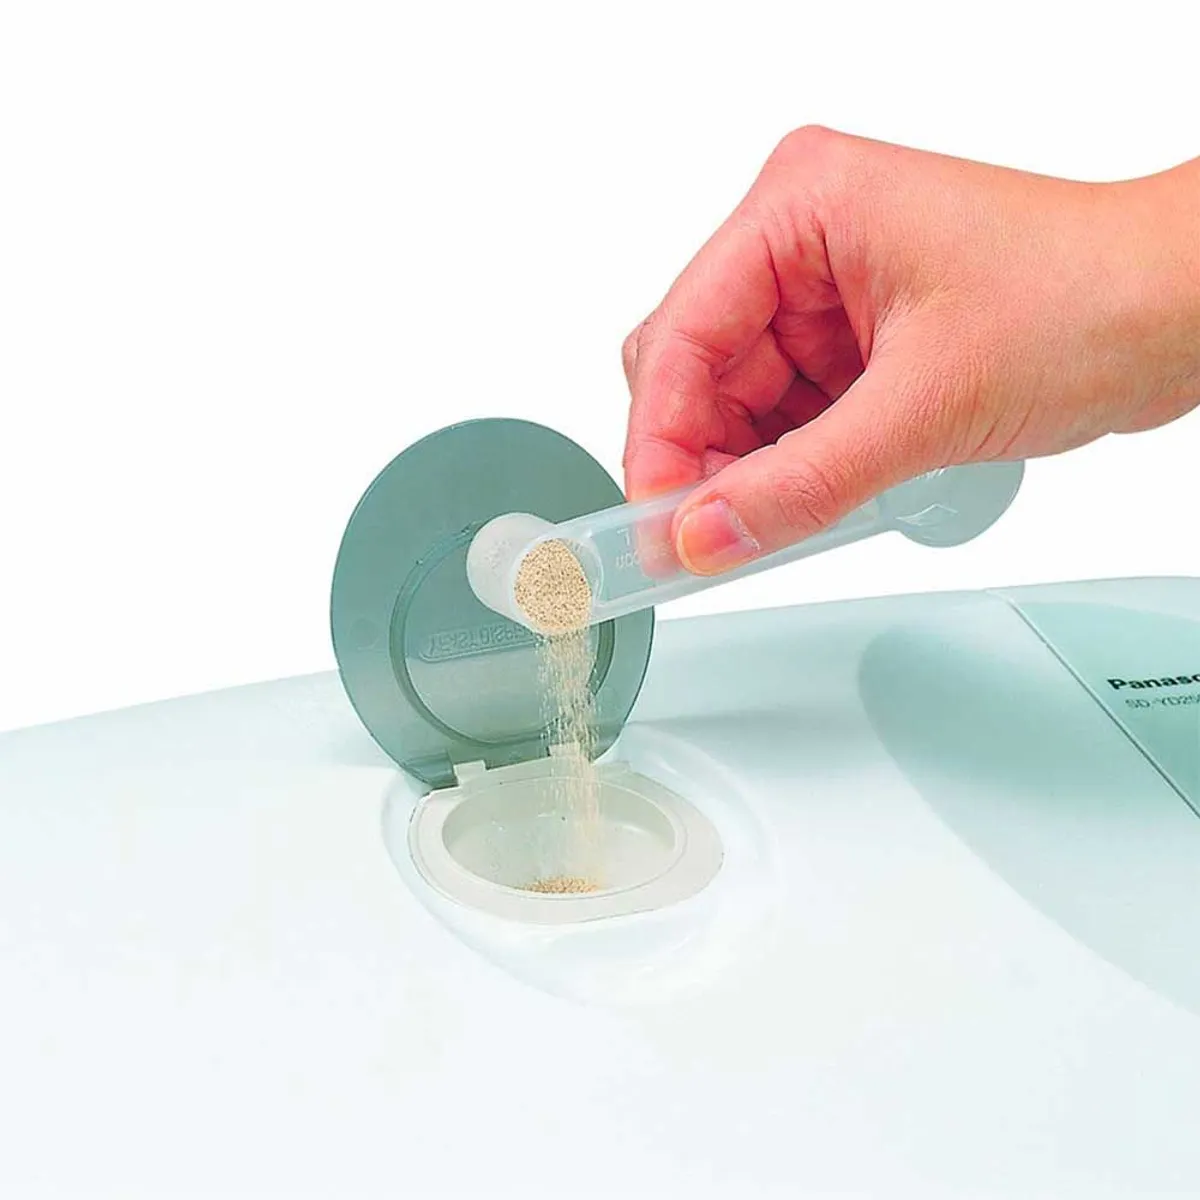 Panasonic Unique Yeast Dispenser